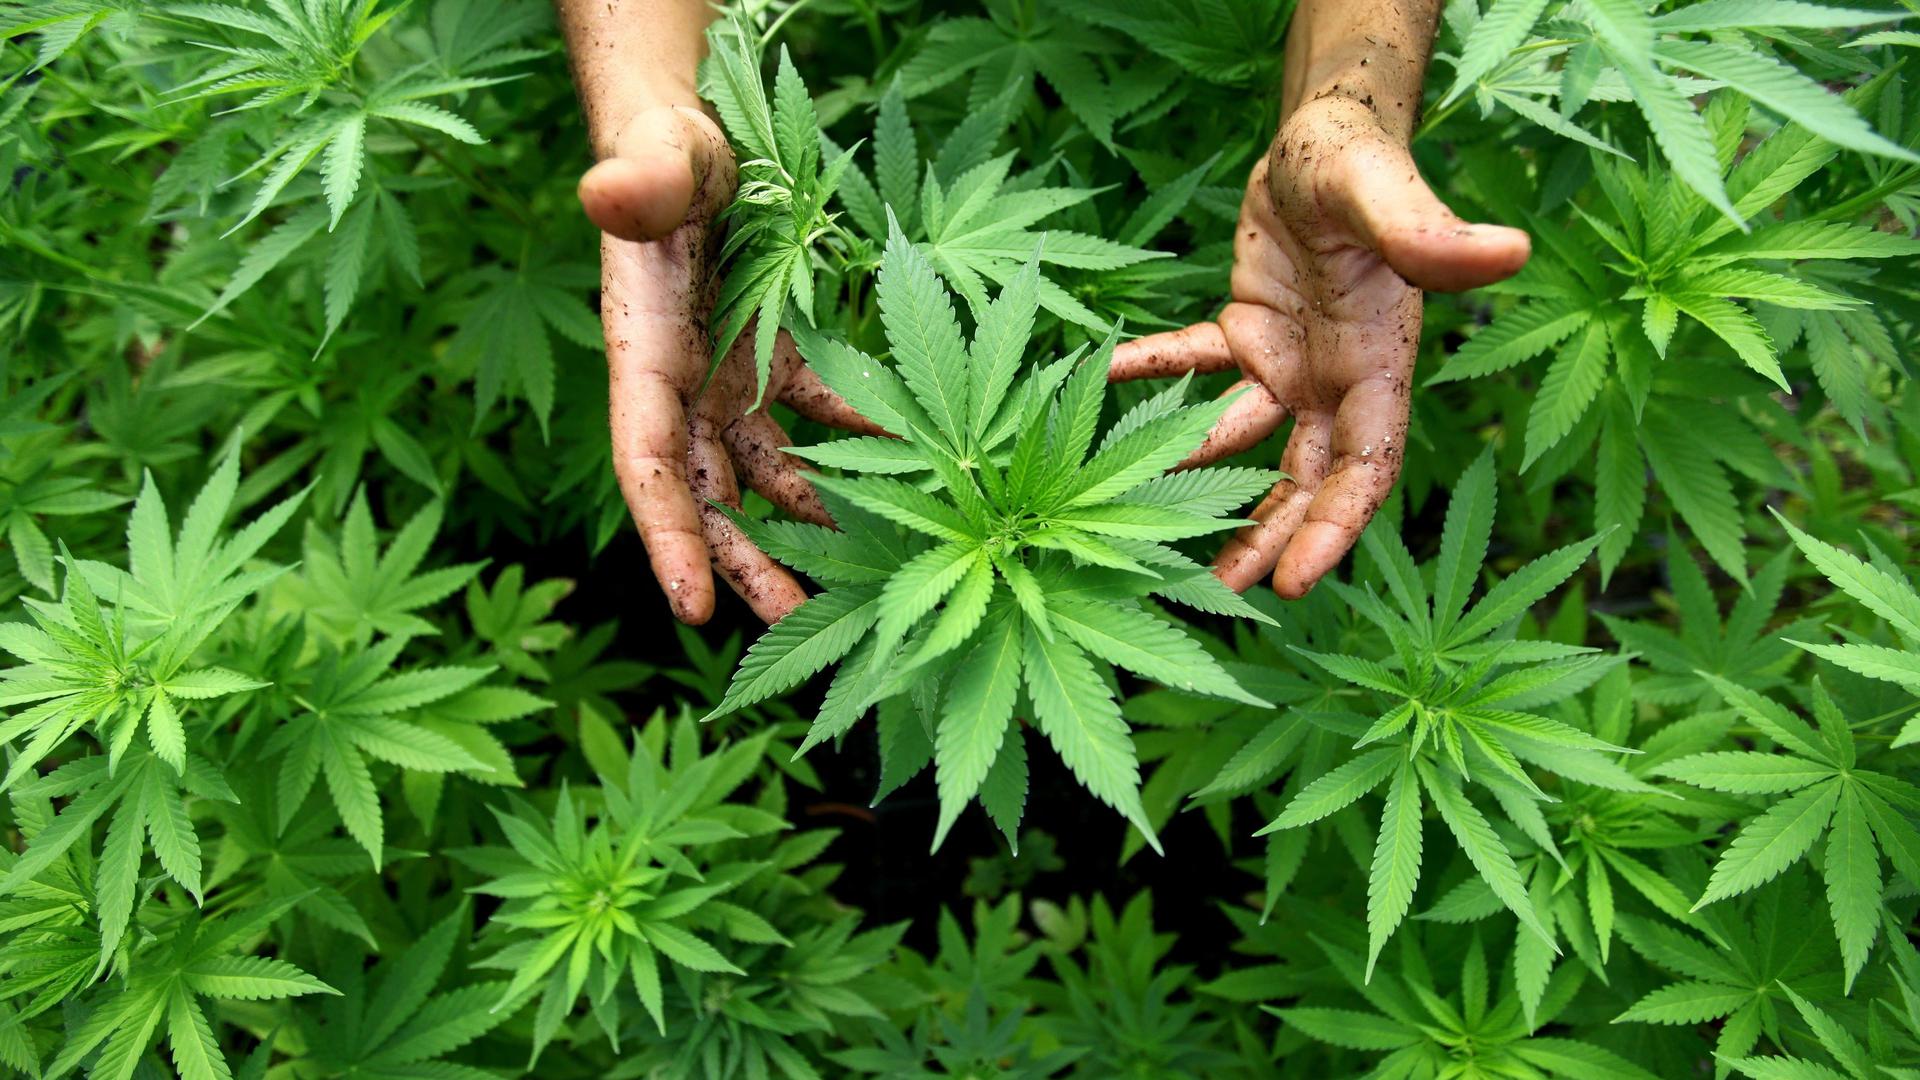 ARCHIV - 31.08.2010, Israel, Safed: Cannabis Pflanzen, aus denen auch Marihuana hergestellt wird, sind in einer Plantage zu sehen. (zu dpa: «Suchthilfe zum Internationalen Tag gegen Drogenmissbrauch") Foto: picture alliance / dpa +++ dpa-Bildfunk +++ | Verwendung weltweit